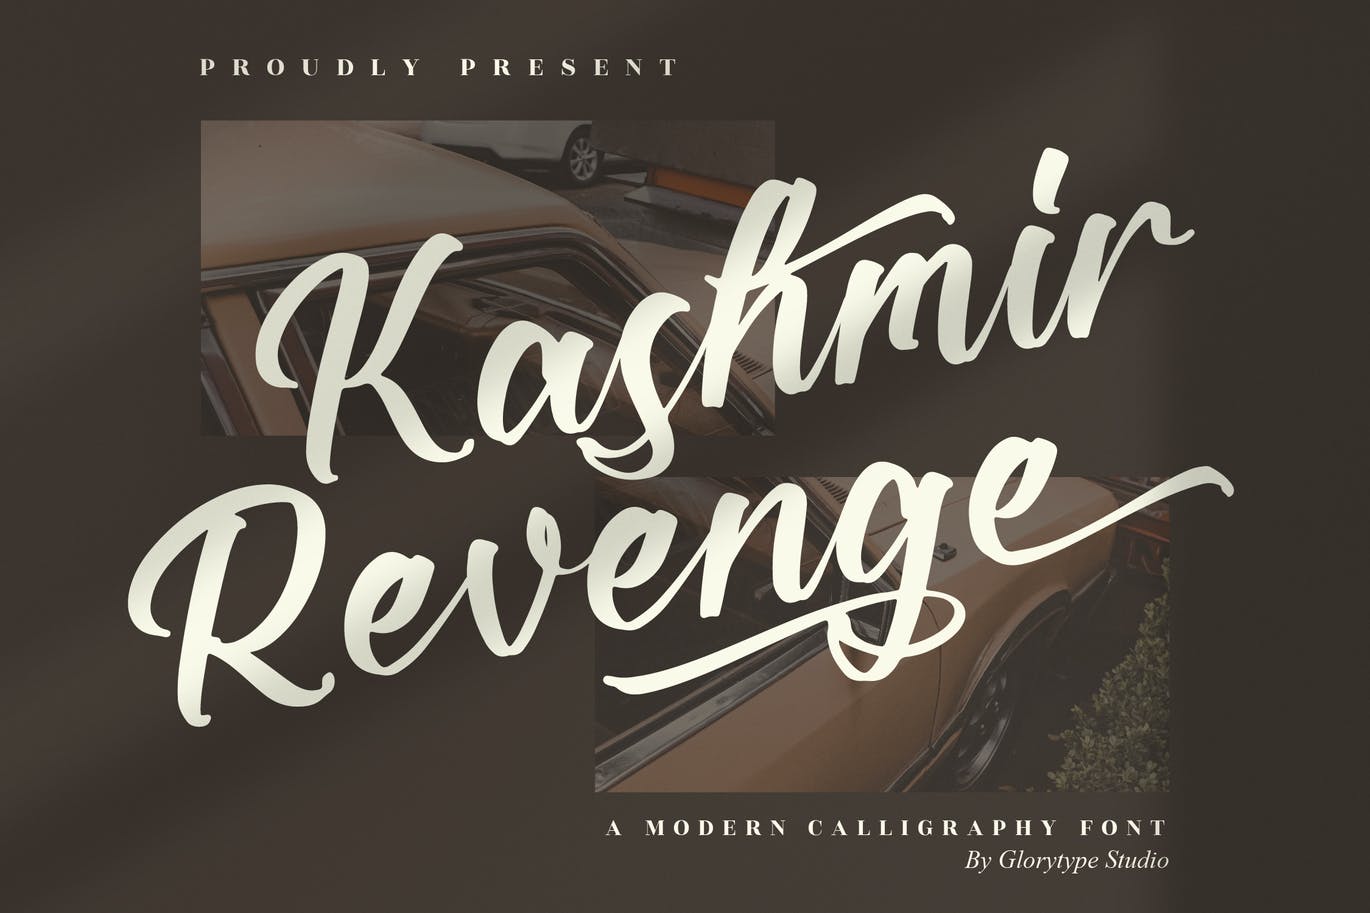 现代艺术书法字体素材 Kashmir Revenge Calligraphy Font 设计素材 第12张